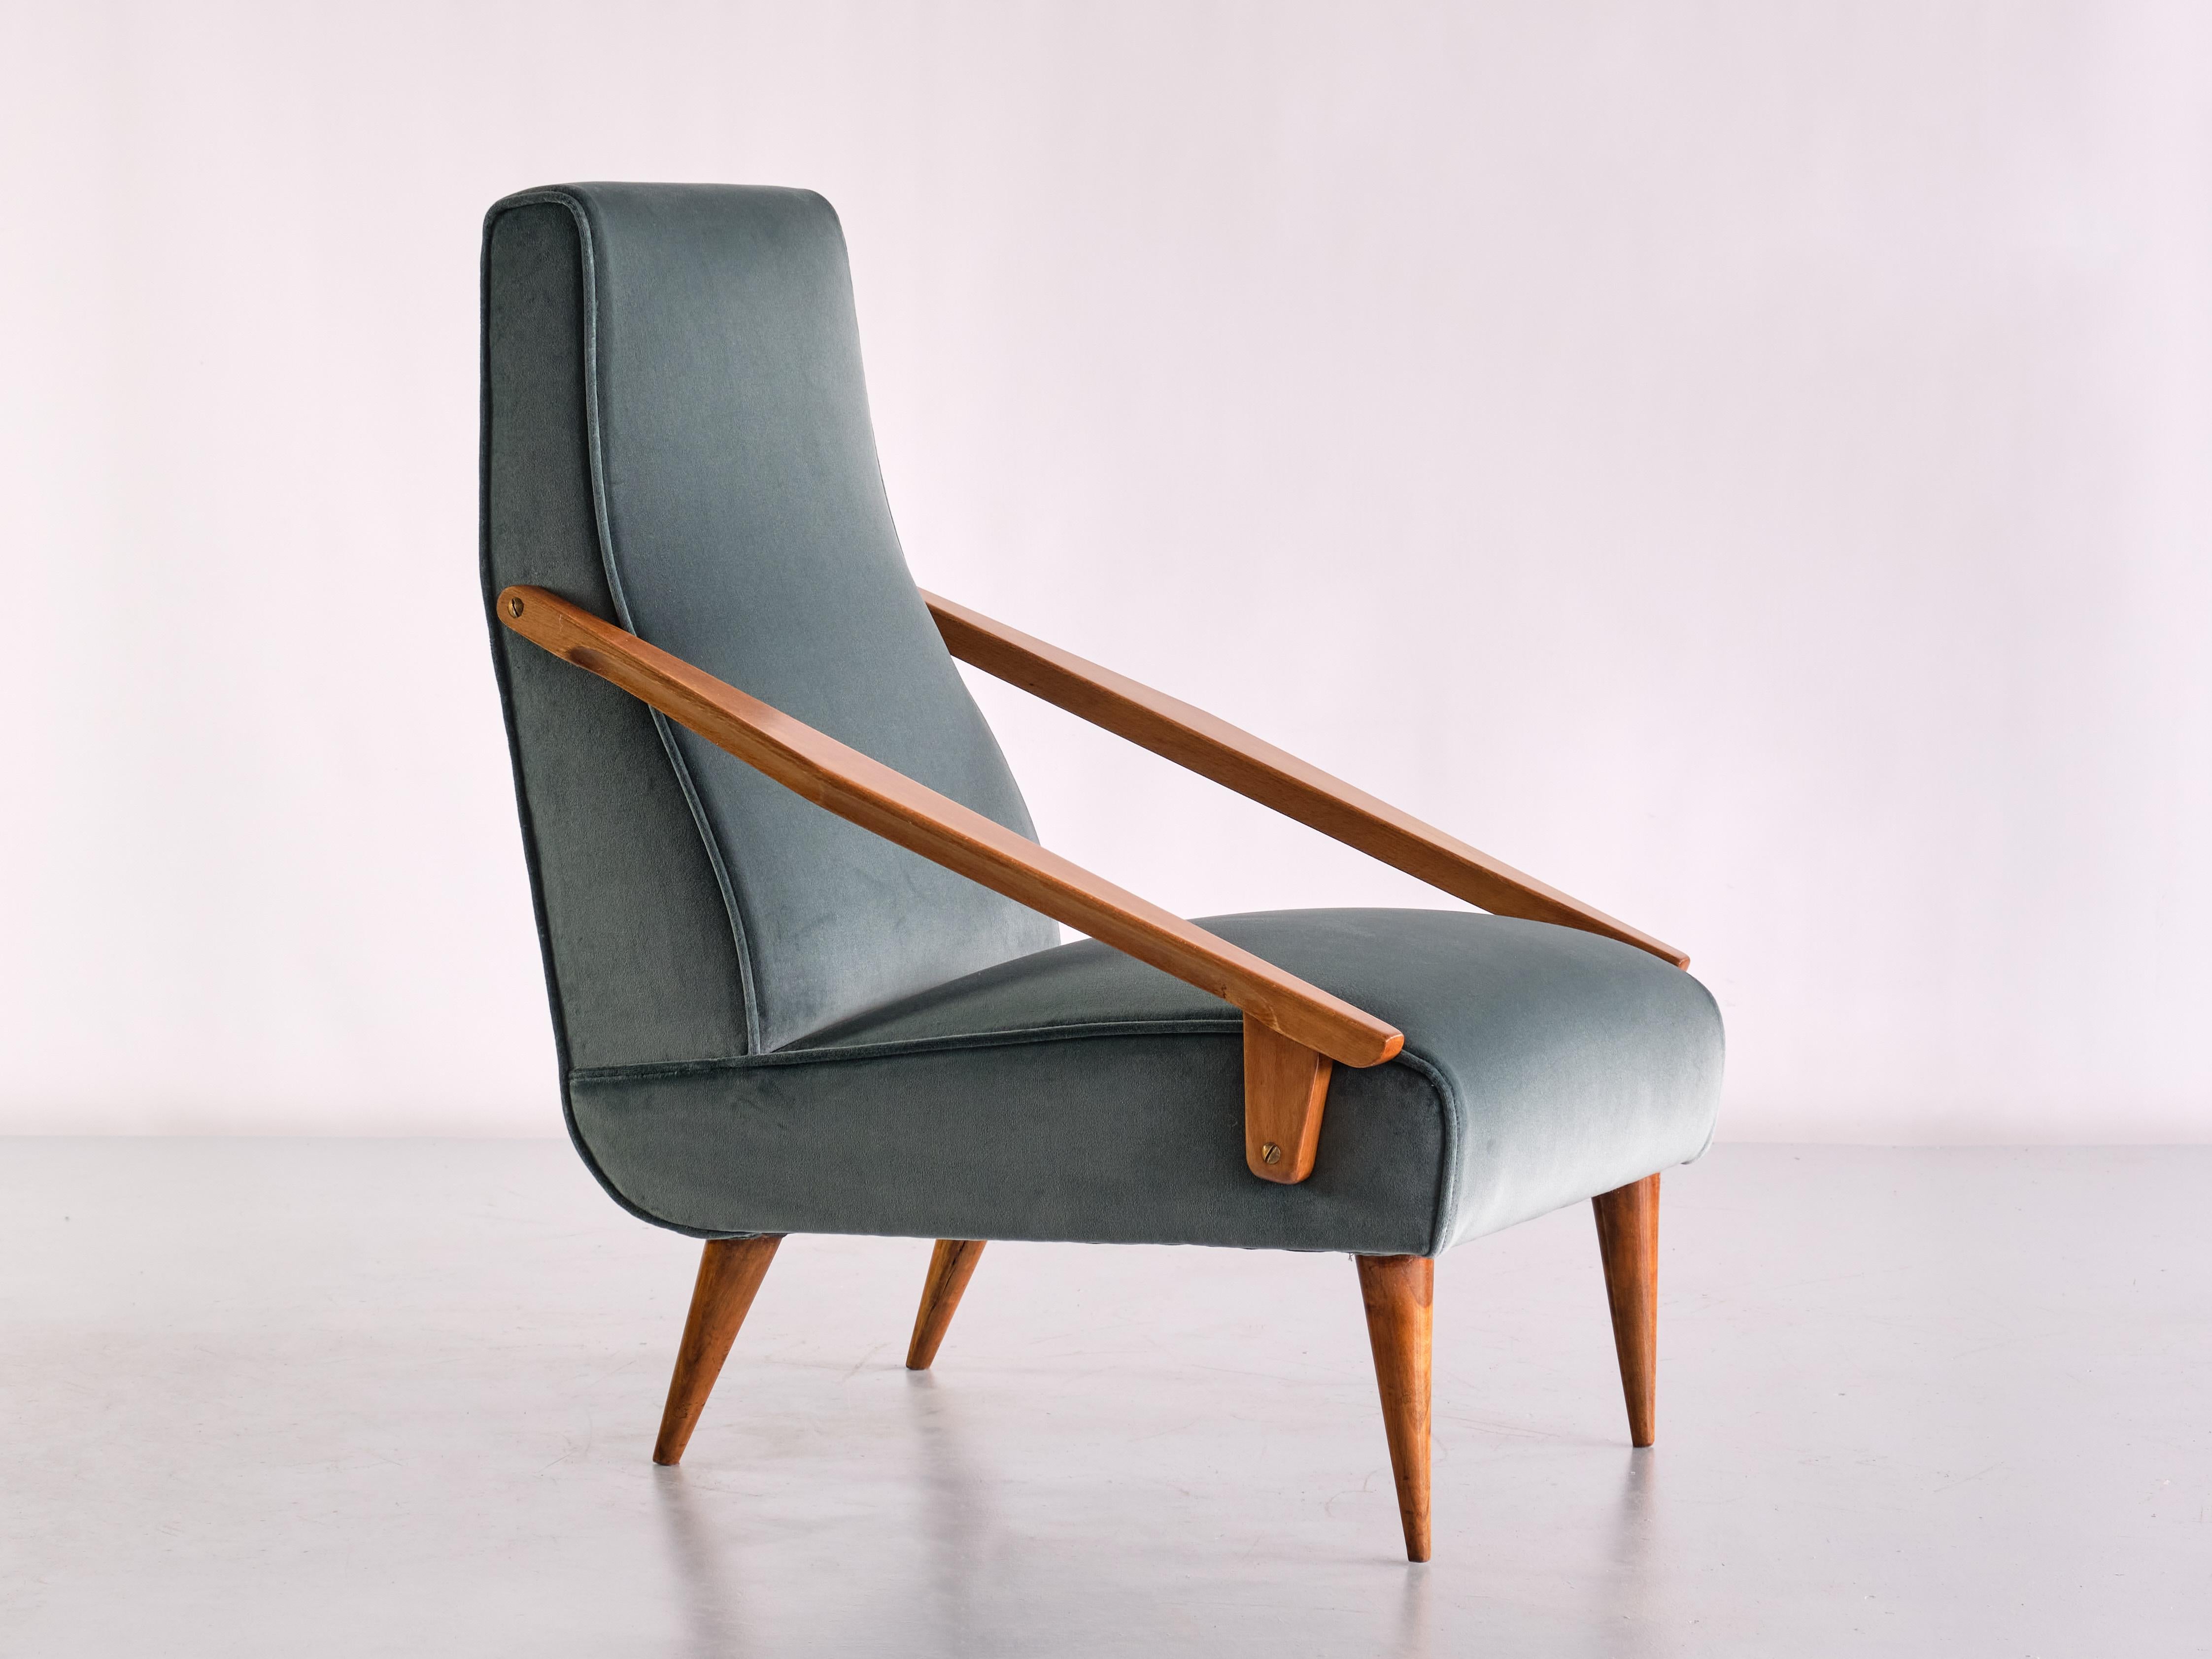 Ce fauteuil rare a été conçu par Gio Ponti et produit par Boucher et Fils en France en 1955. Le design saisissant est marqué par la forme géométrique des accoudoirs angulaires et des pieds coniques effilés, tous en bois de frêne massif. Les lignes